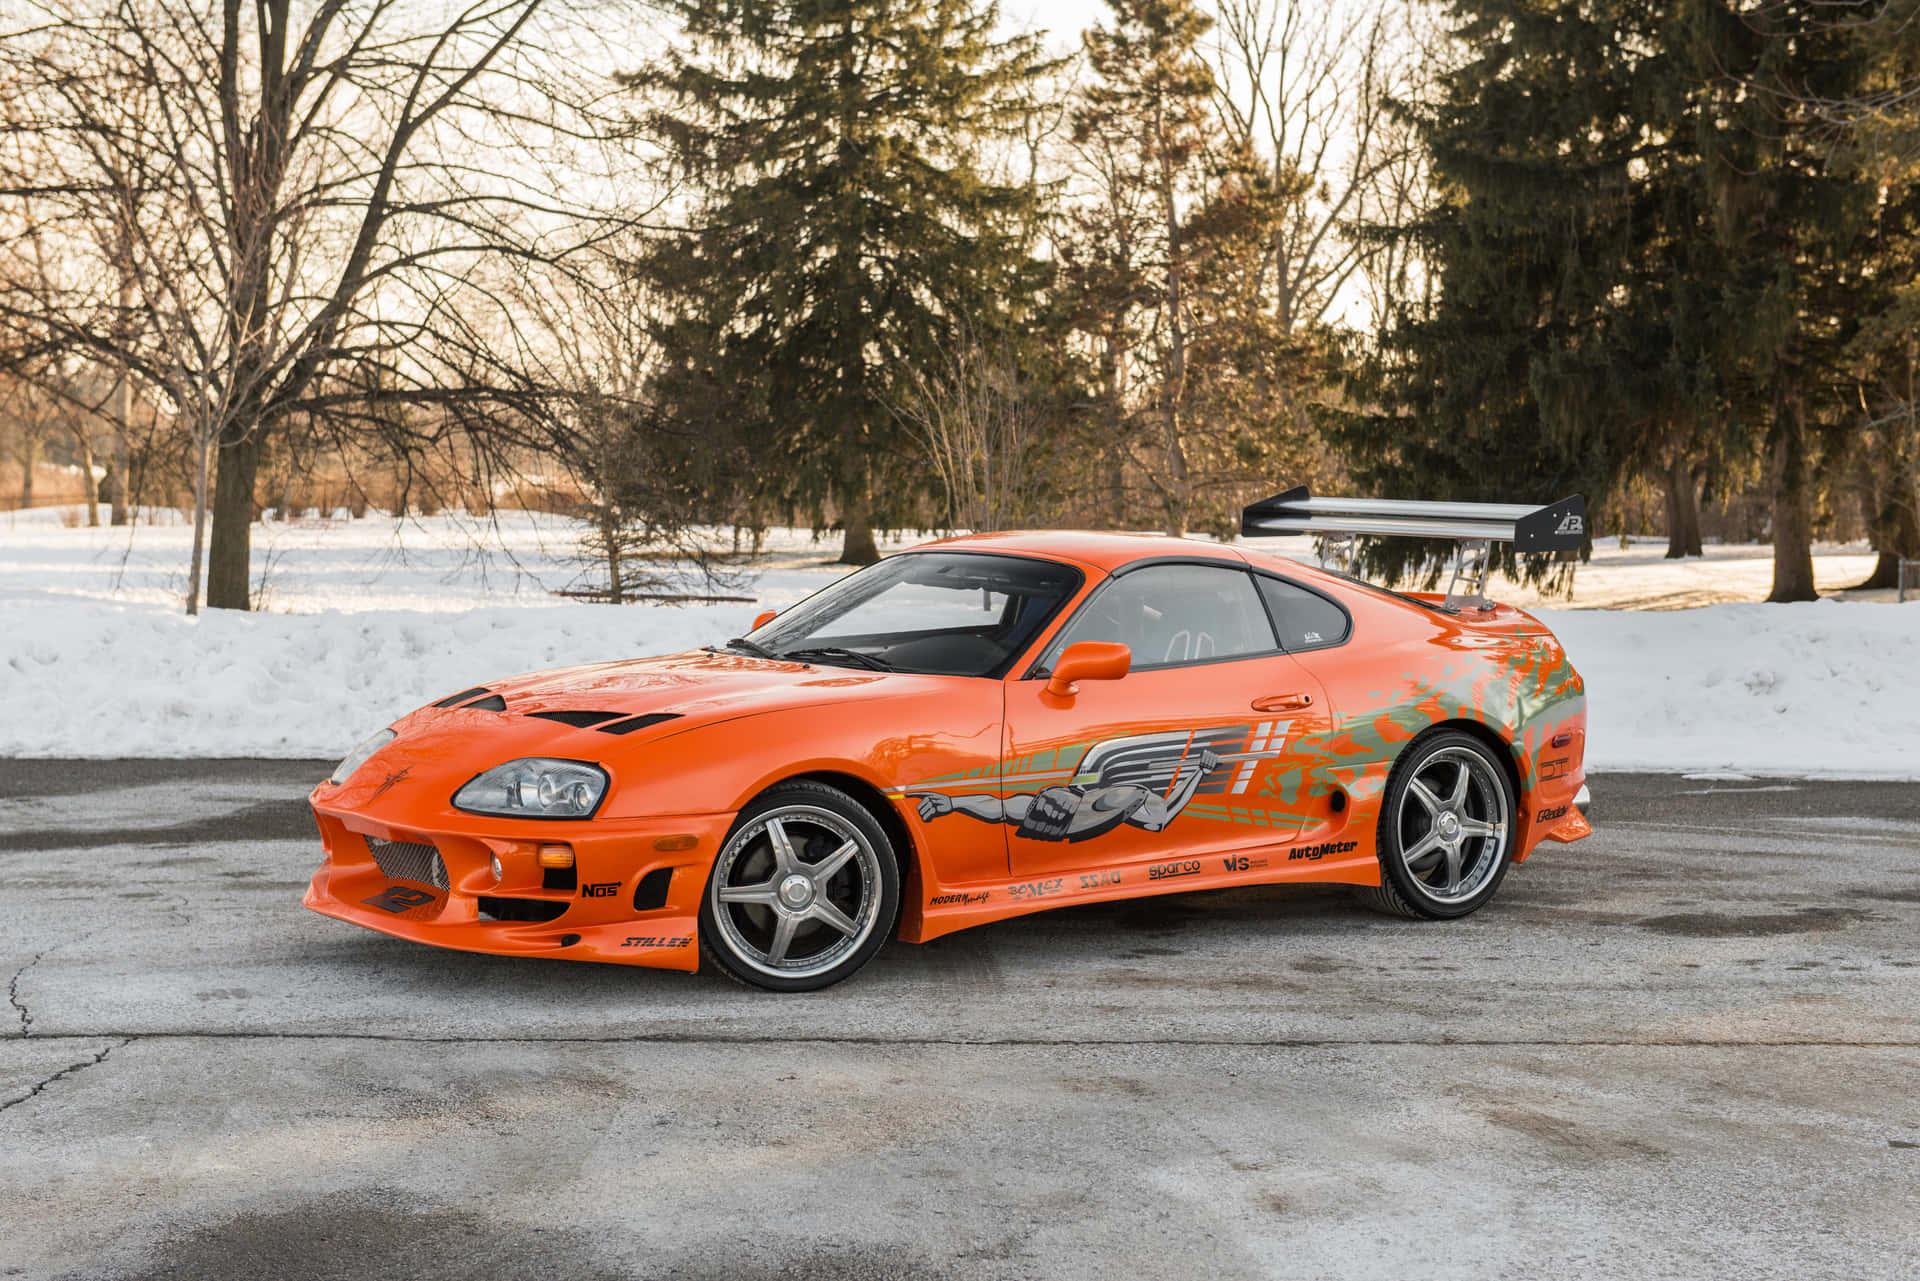 Fastand Furious 1 - Vin Diesel Und Paul Walker Führen Eine Unterirdische Straßenrenn-gruppe An. Wallpaper